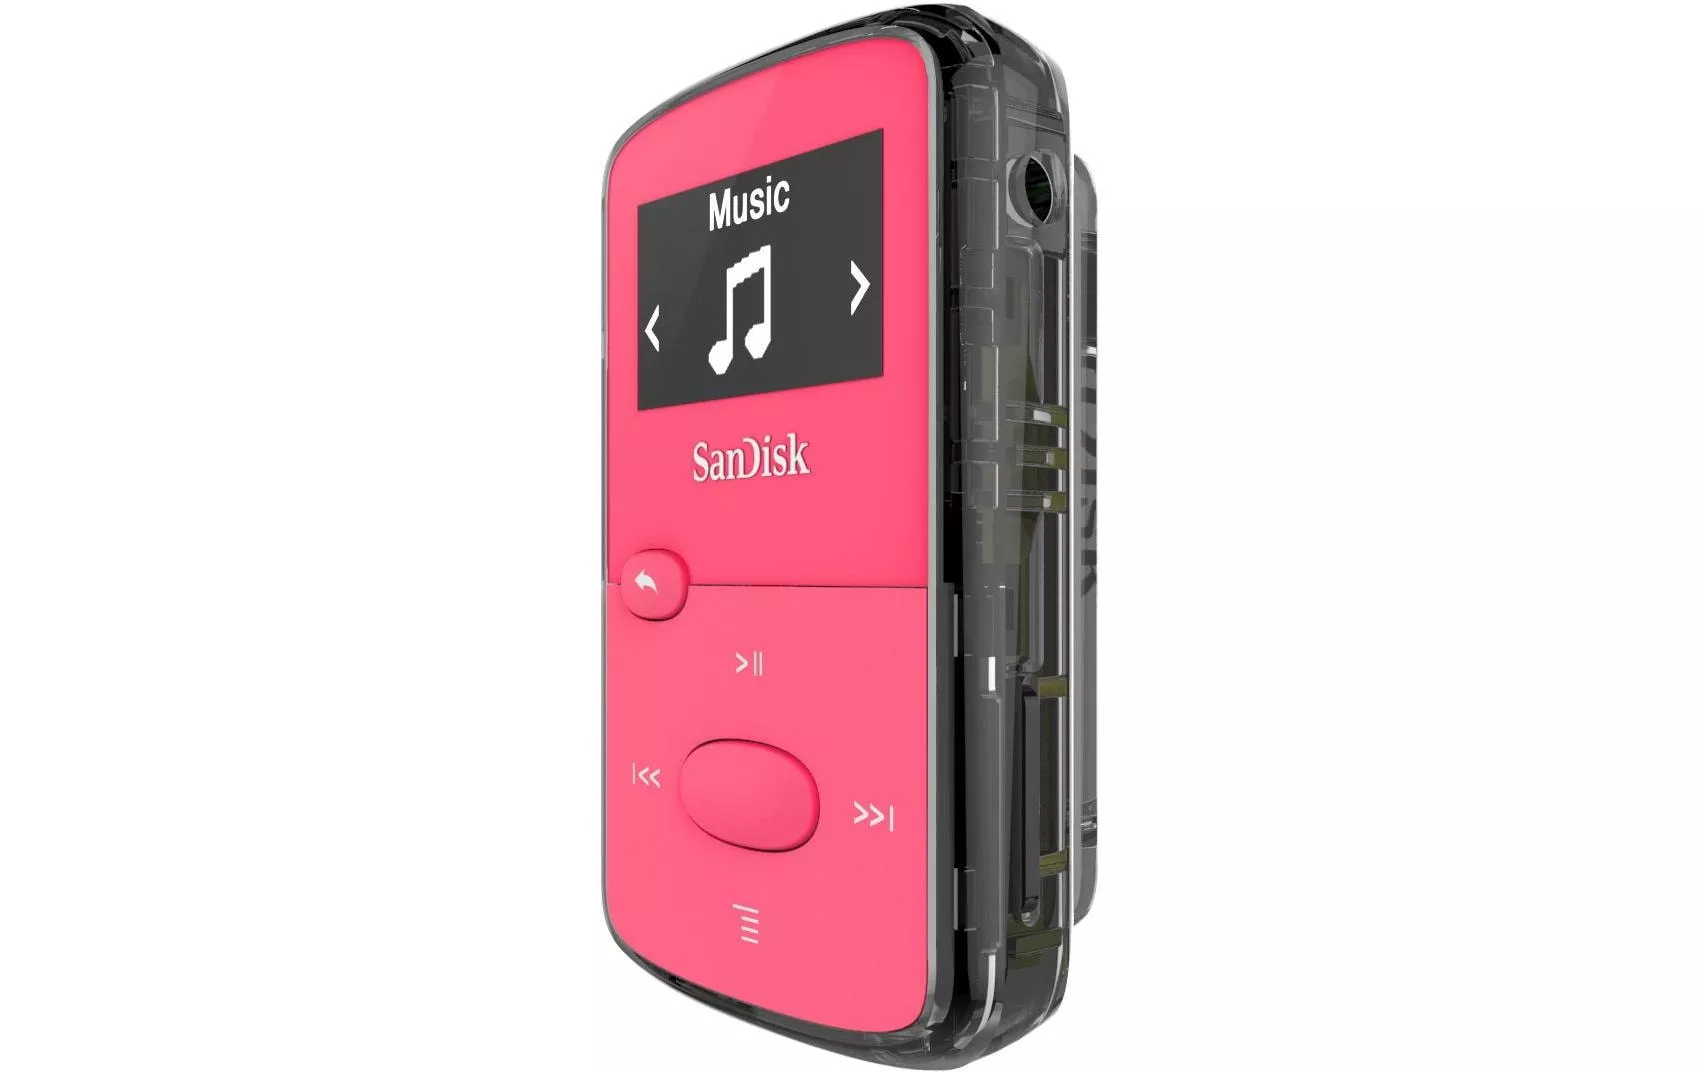 Lettore MP3 SanDisk Clip Jam 8 GB Rosa